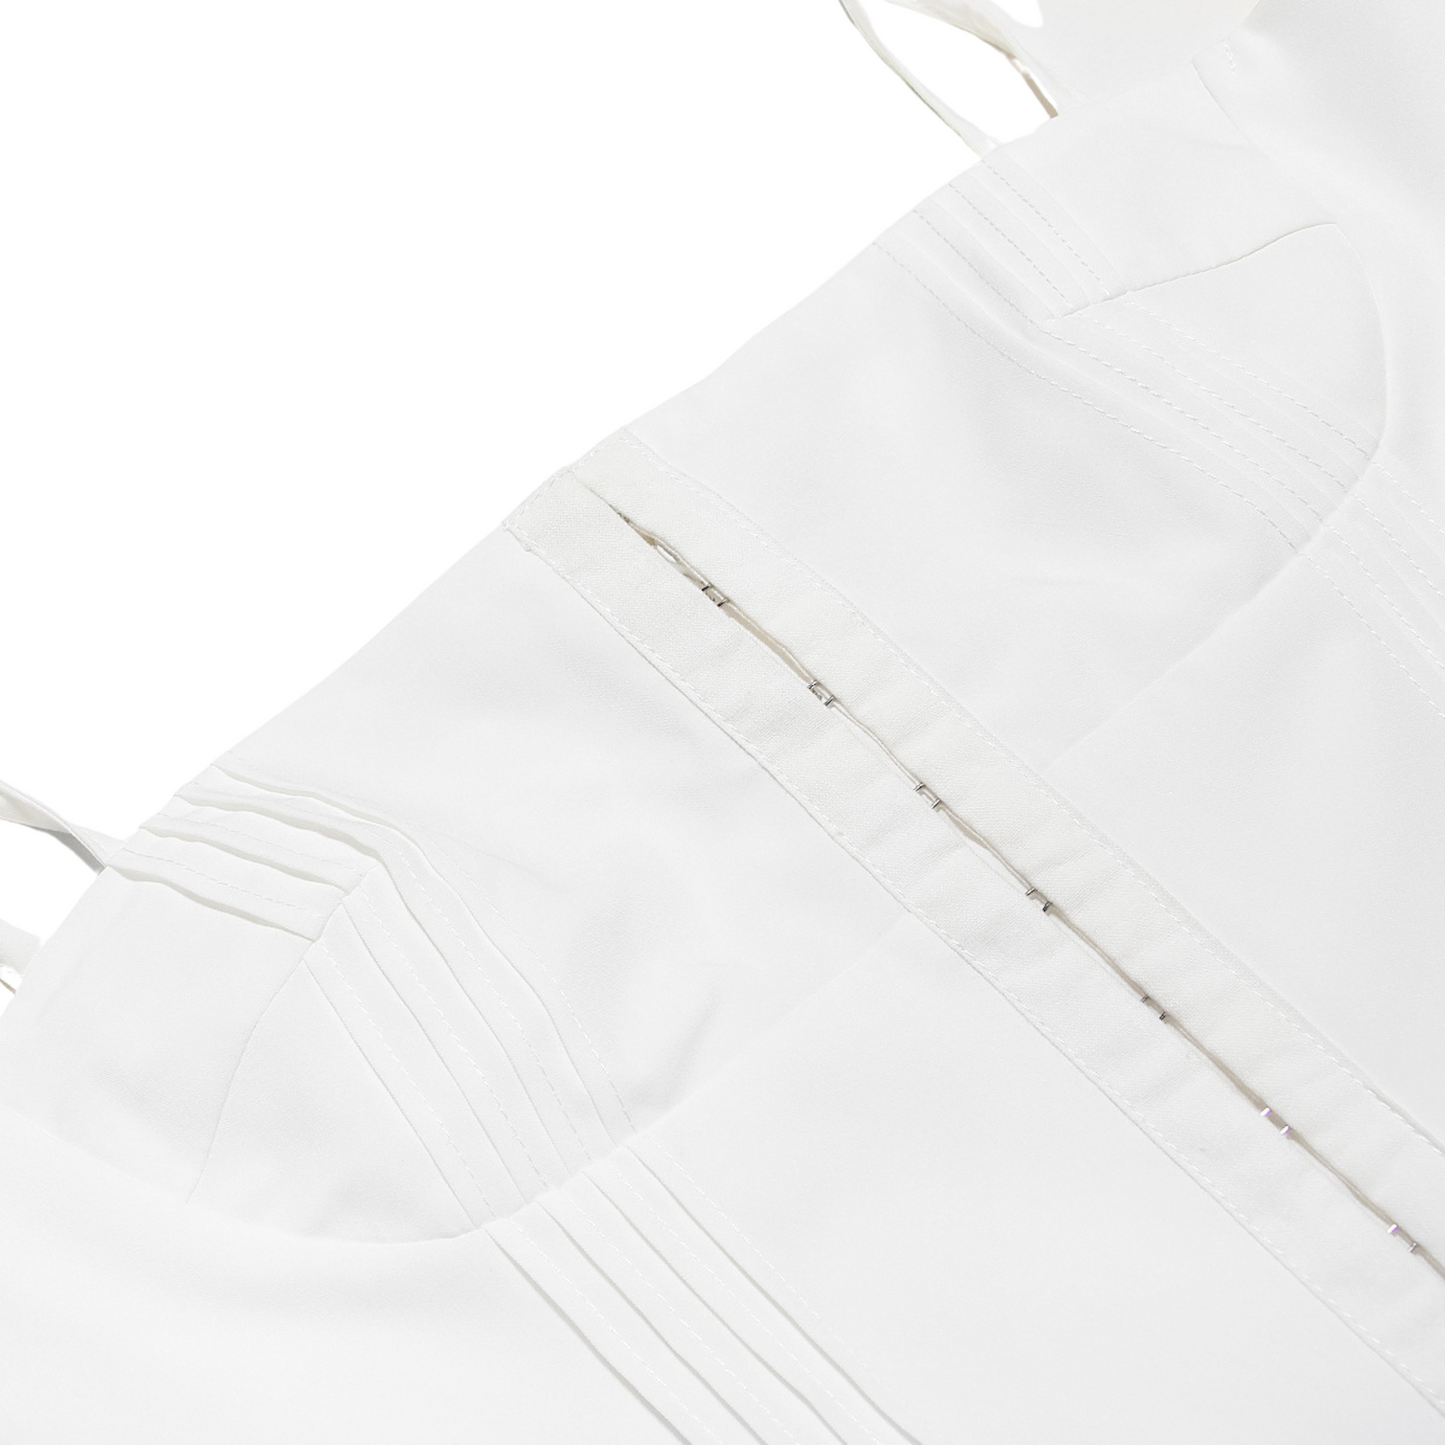 White Lace Trim Corset Short Dress